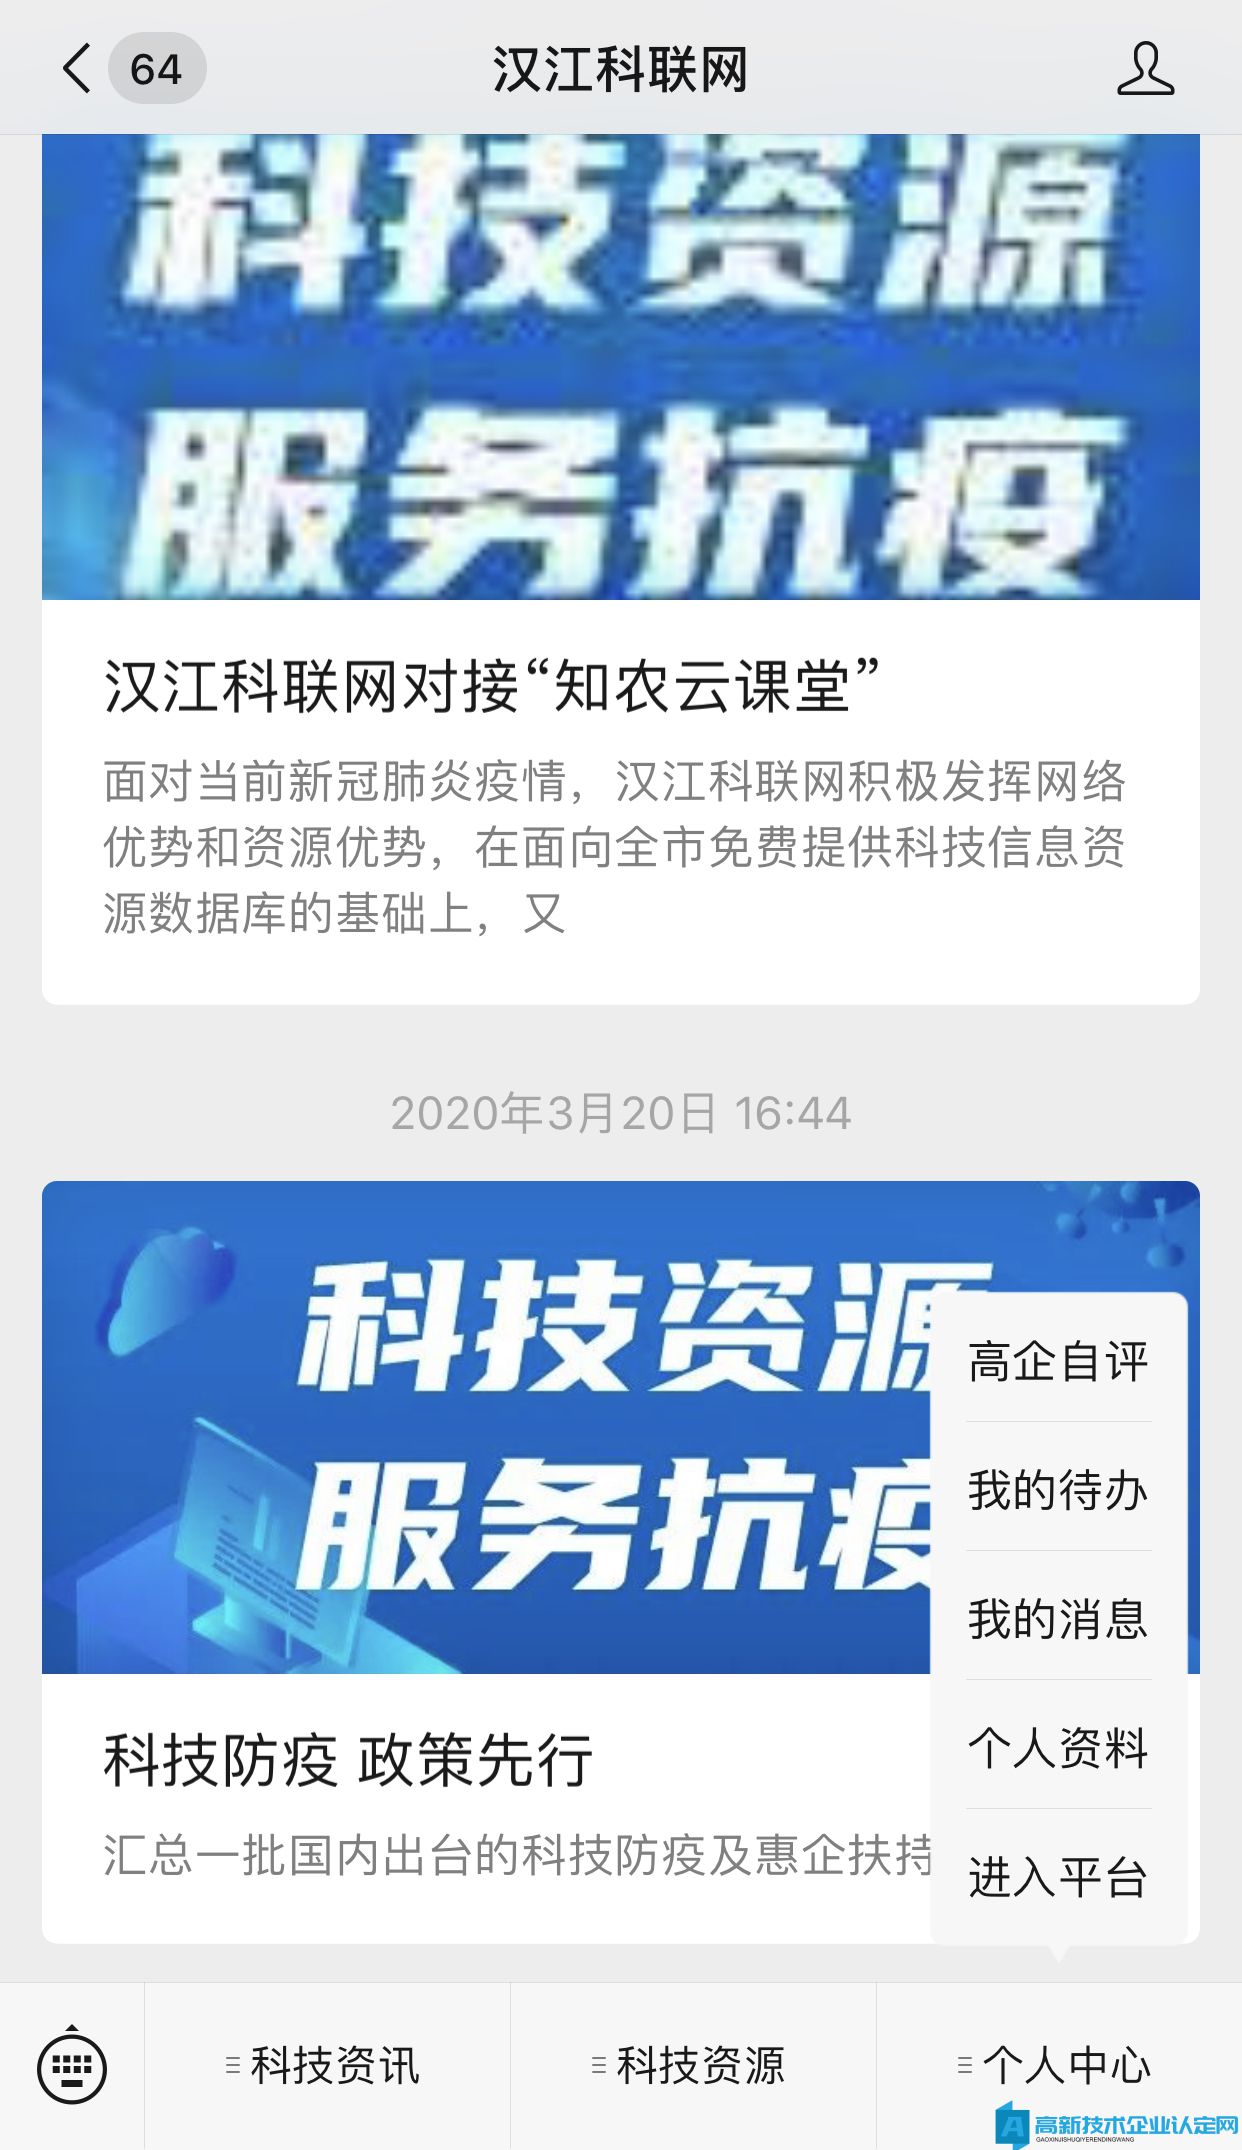 襄阳市高新技术企业申报自评操作说明